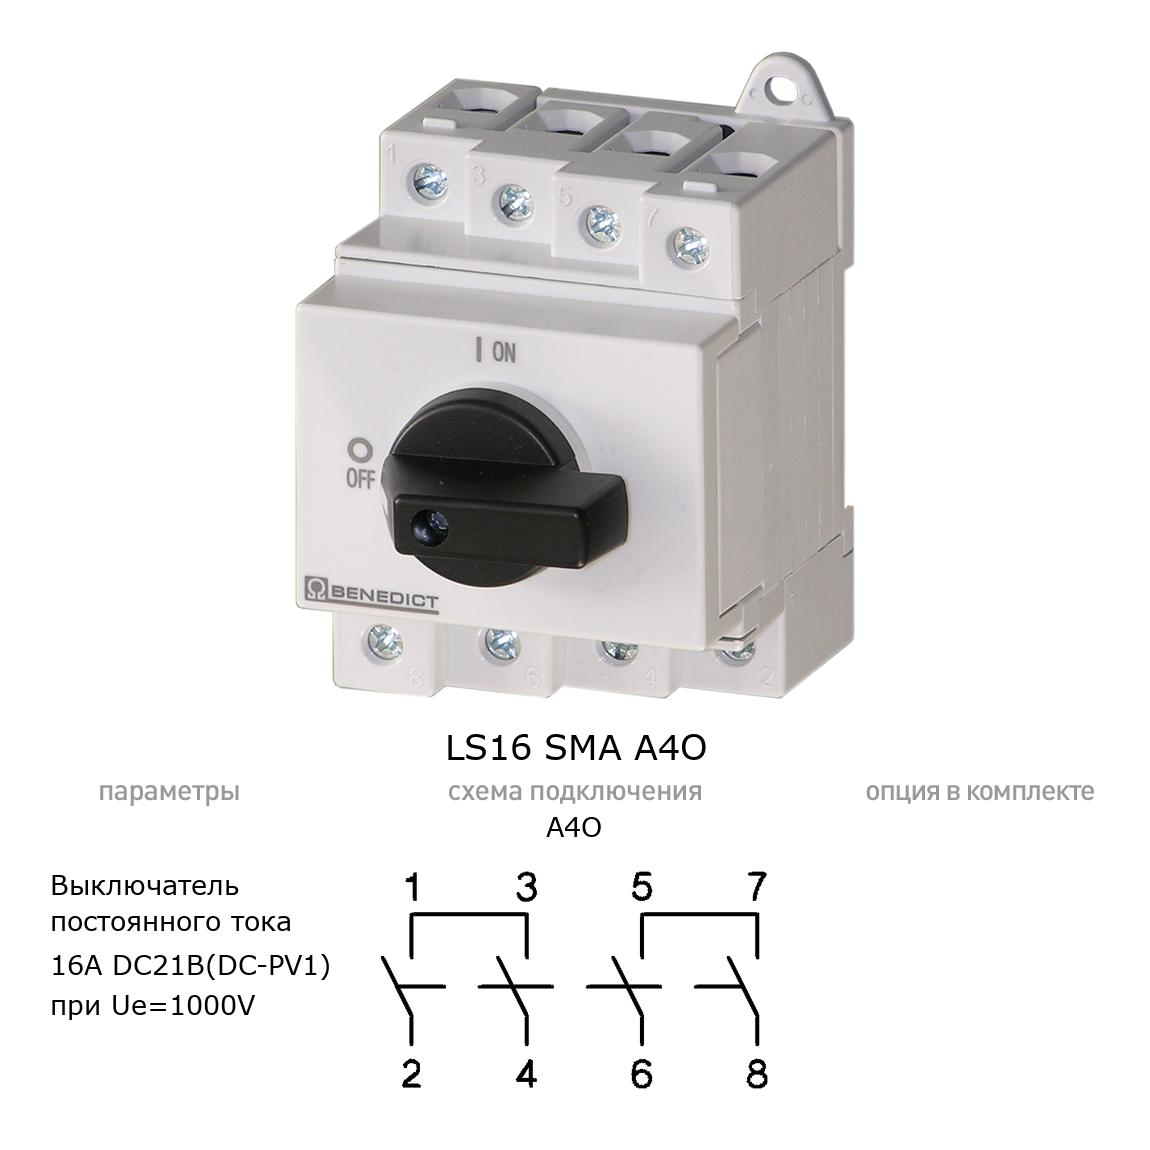 Кулачковый переключатель для постоянного тока (DC) LS16 SMA A4O BENEDICT